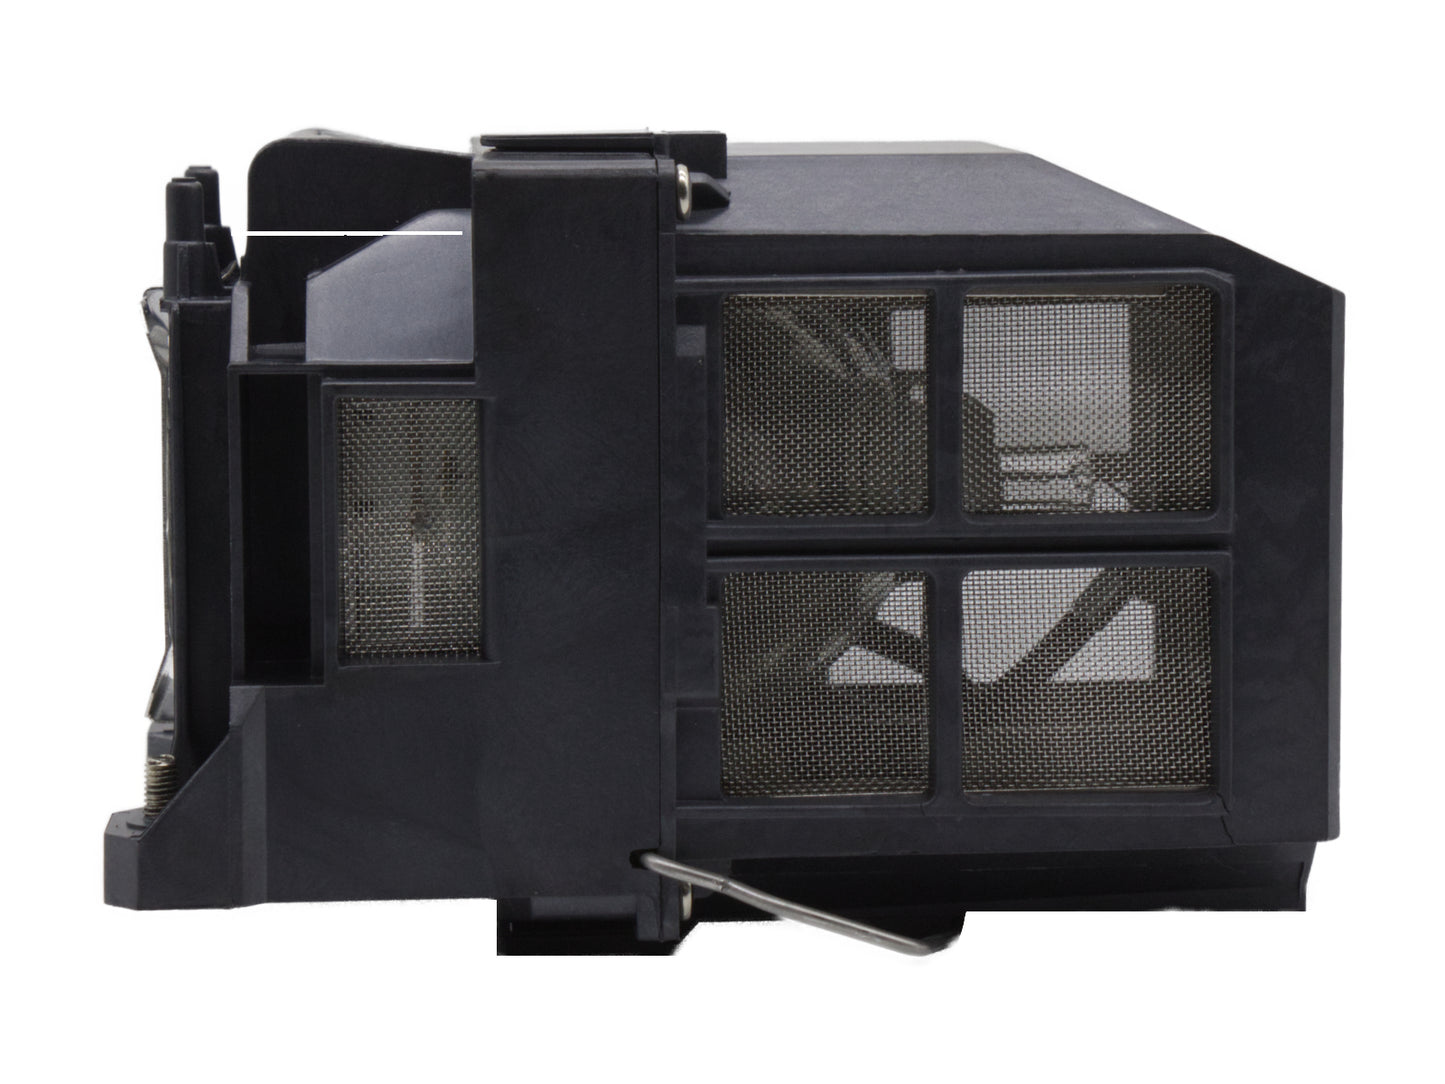 codalux lampada proiettore per EPSON ELPLP77, V13H010L77, UHM/HS bulbo con custodia - Bild 6